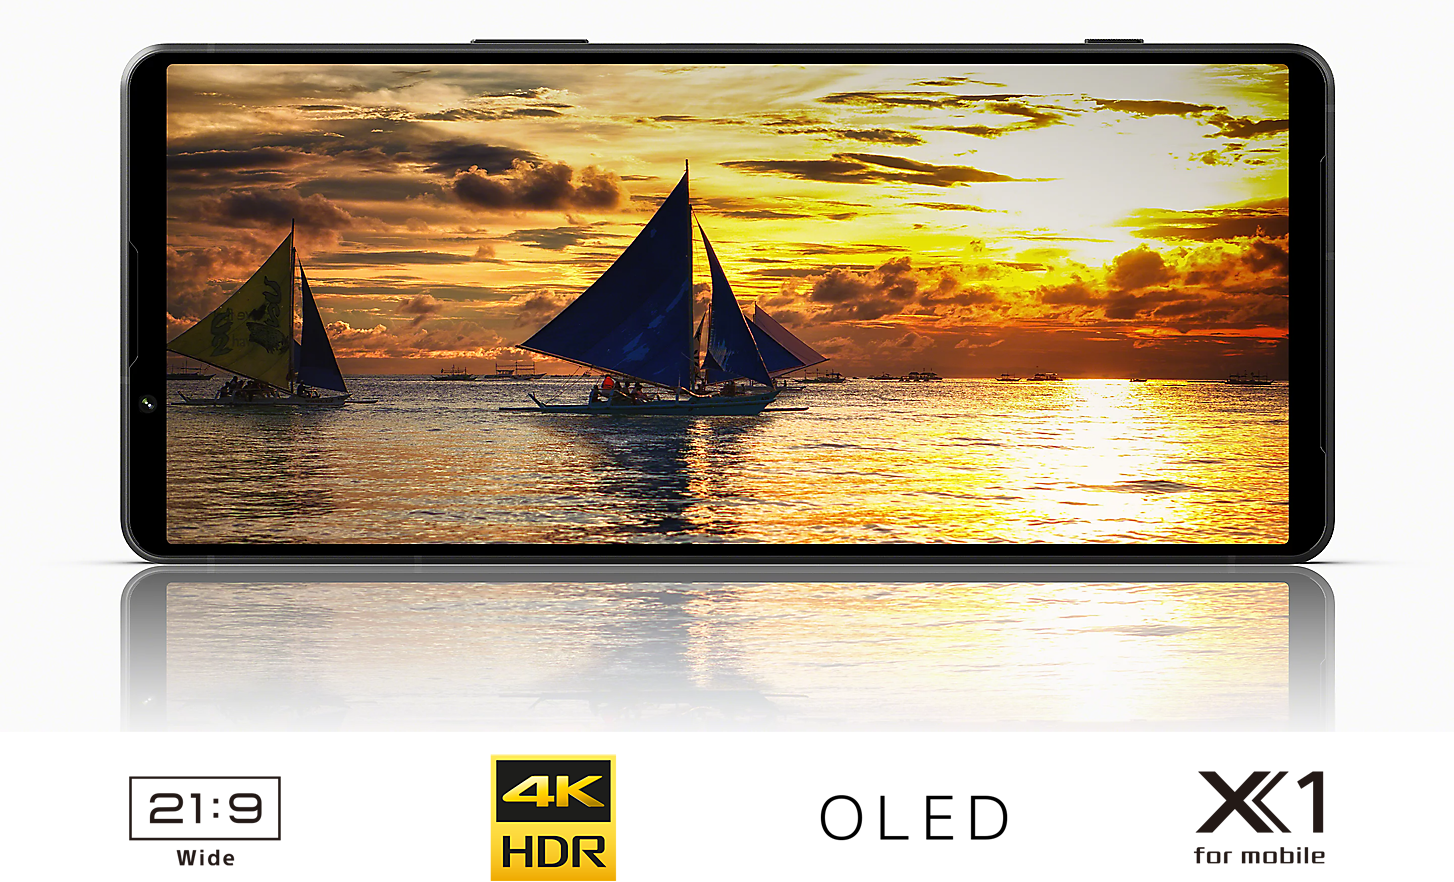 Un Xperia 1V che visualizza una barca a vela al tramonto e al di sotto i loghi 21:9 Wide, 4K HDR, OLED, X1 for mobile